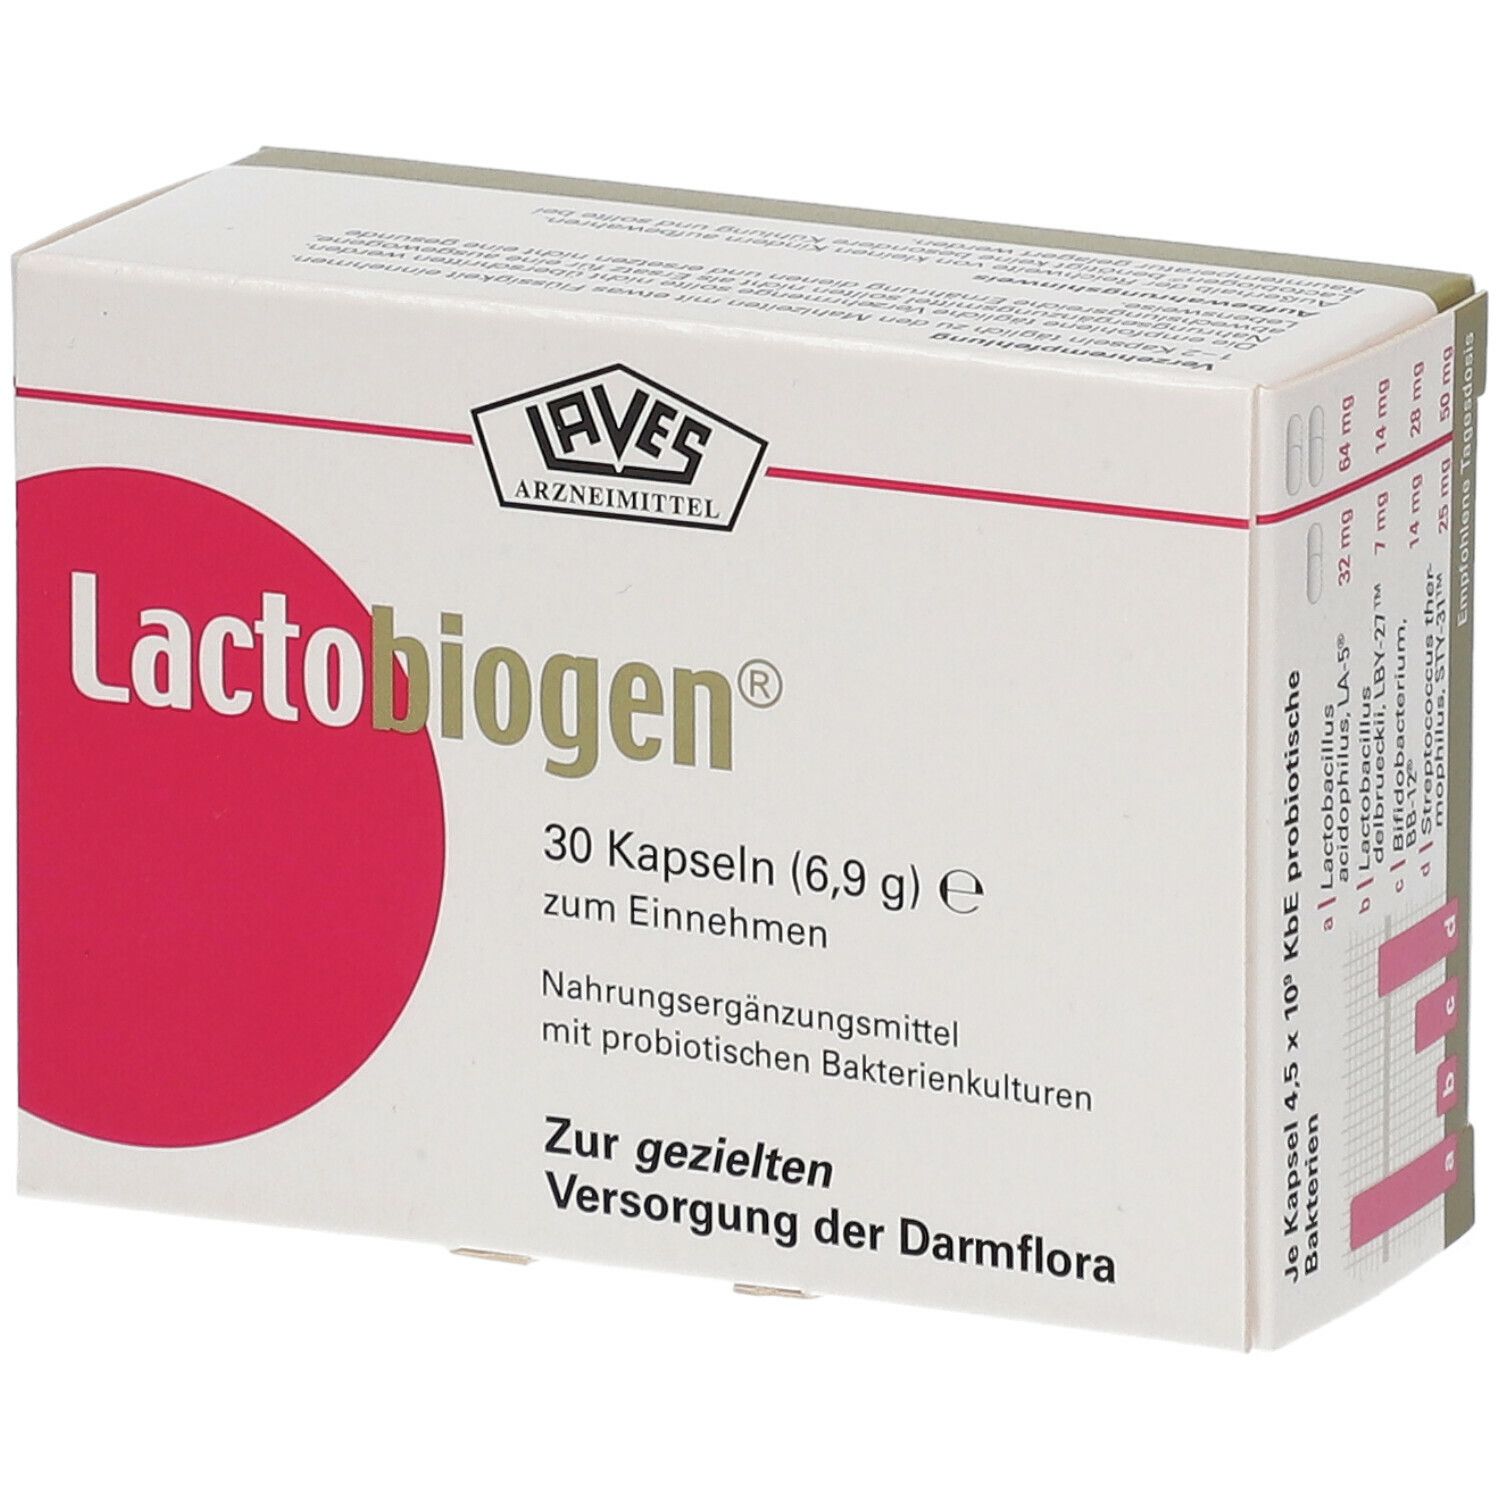 Lactobiogen® capsules